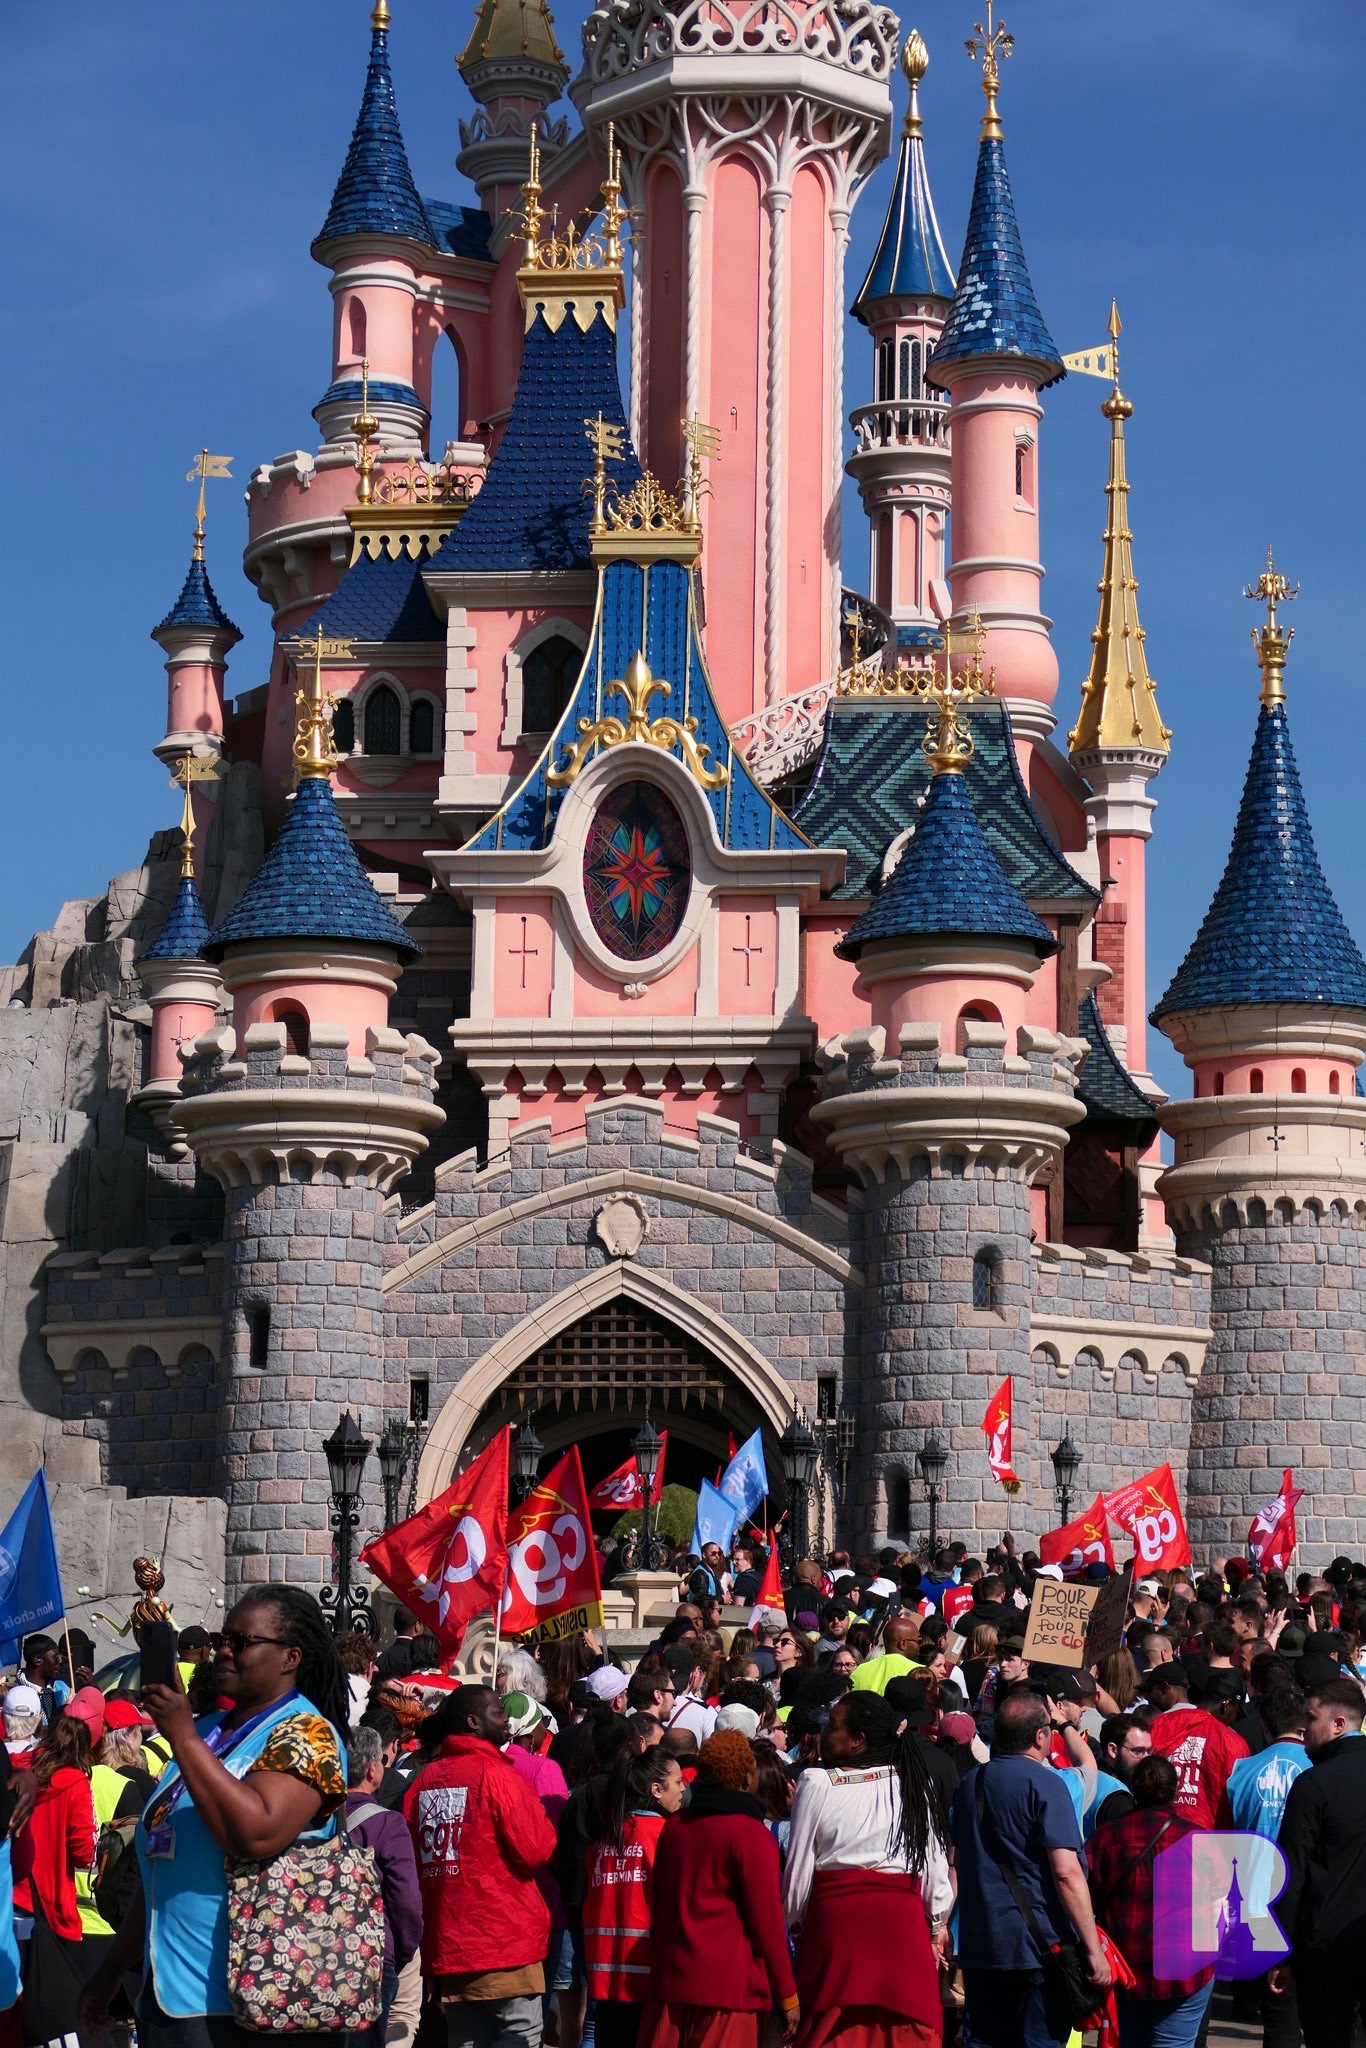 disneyland paris castle with cast members on strike